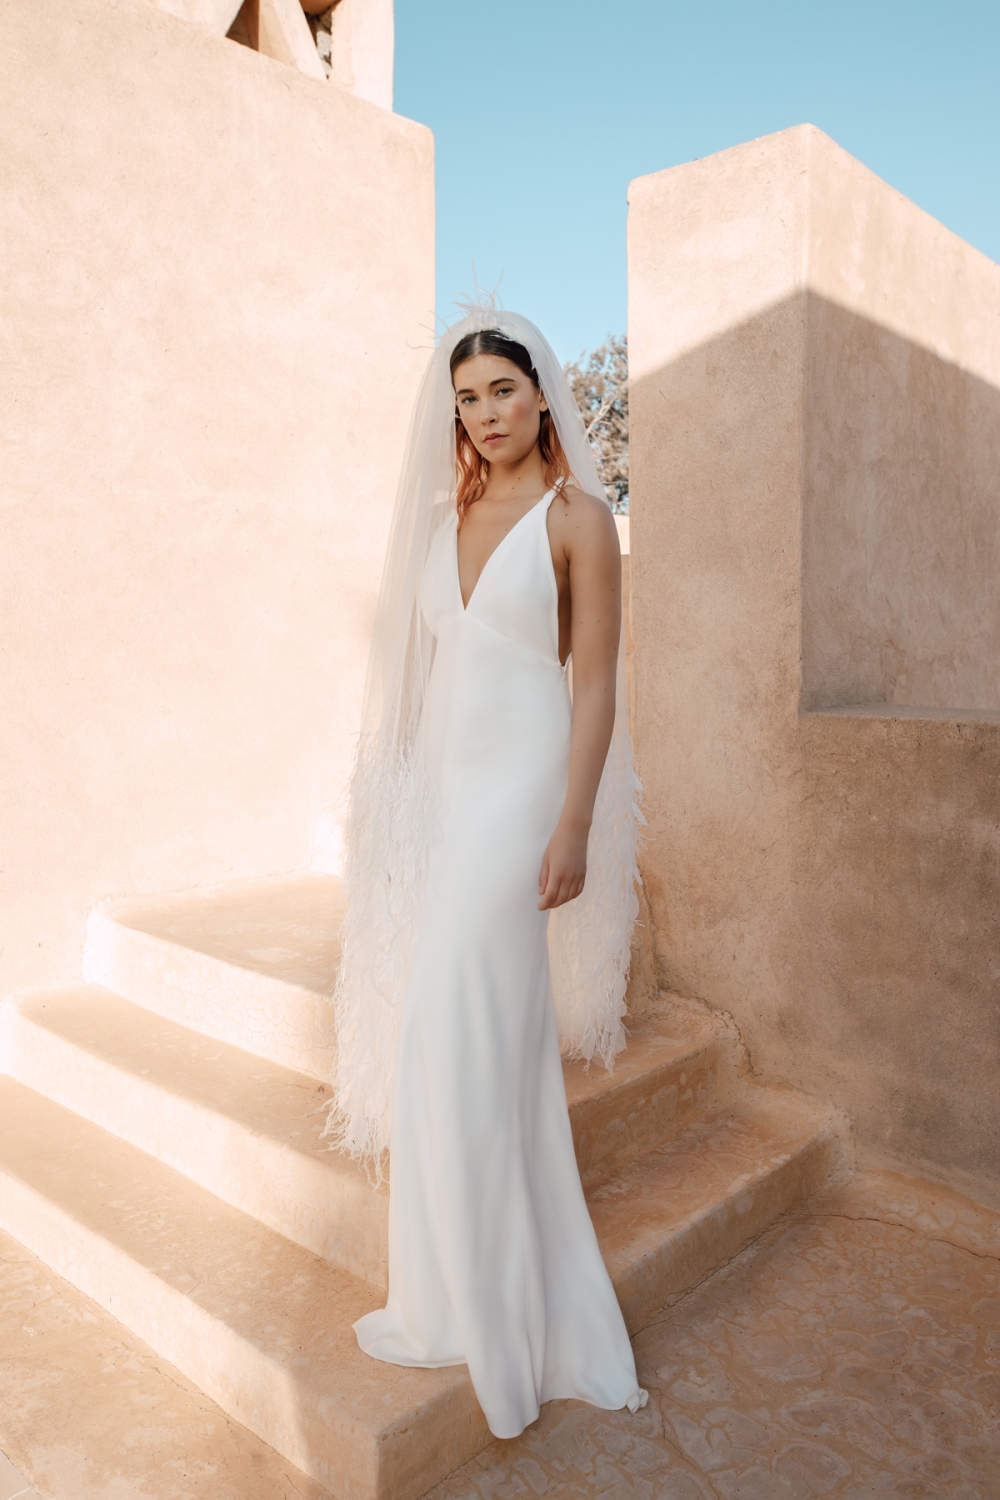  Charlie Brear Wedding Dress Editorial 3000.59 Margaux Veil.07 Alba(1)